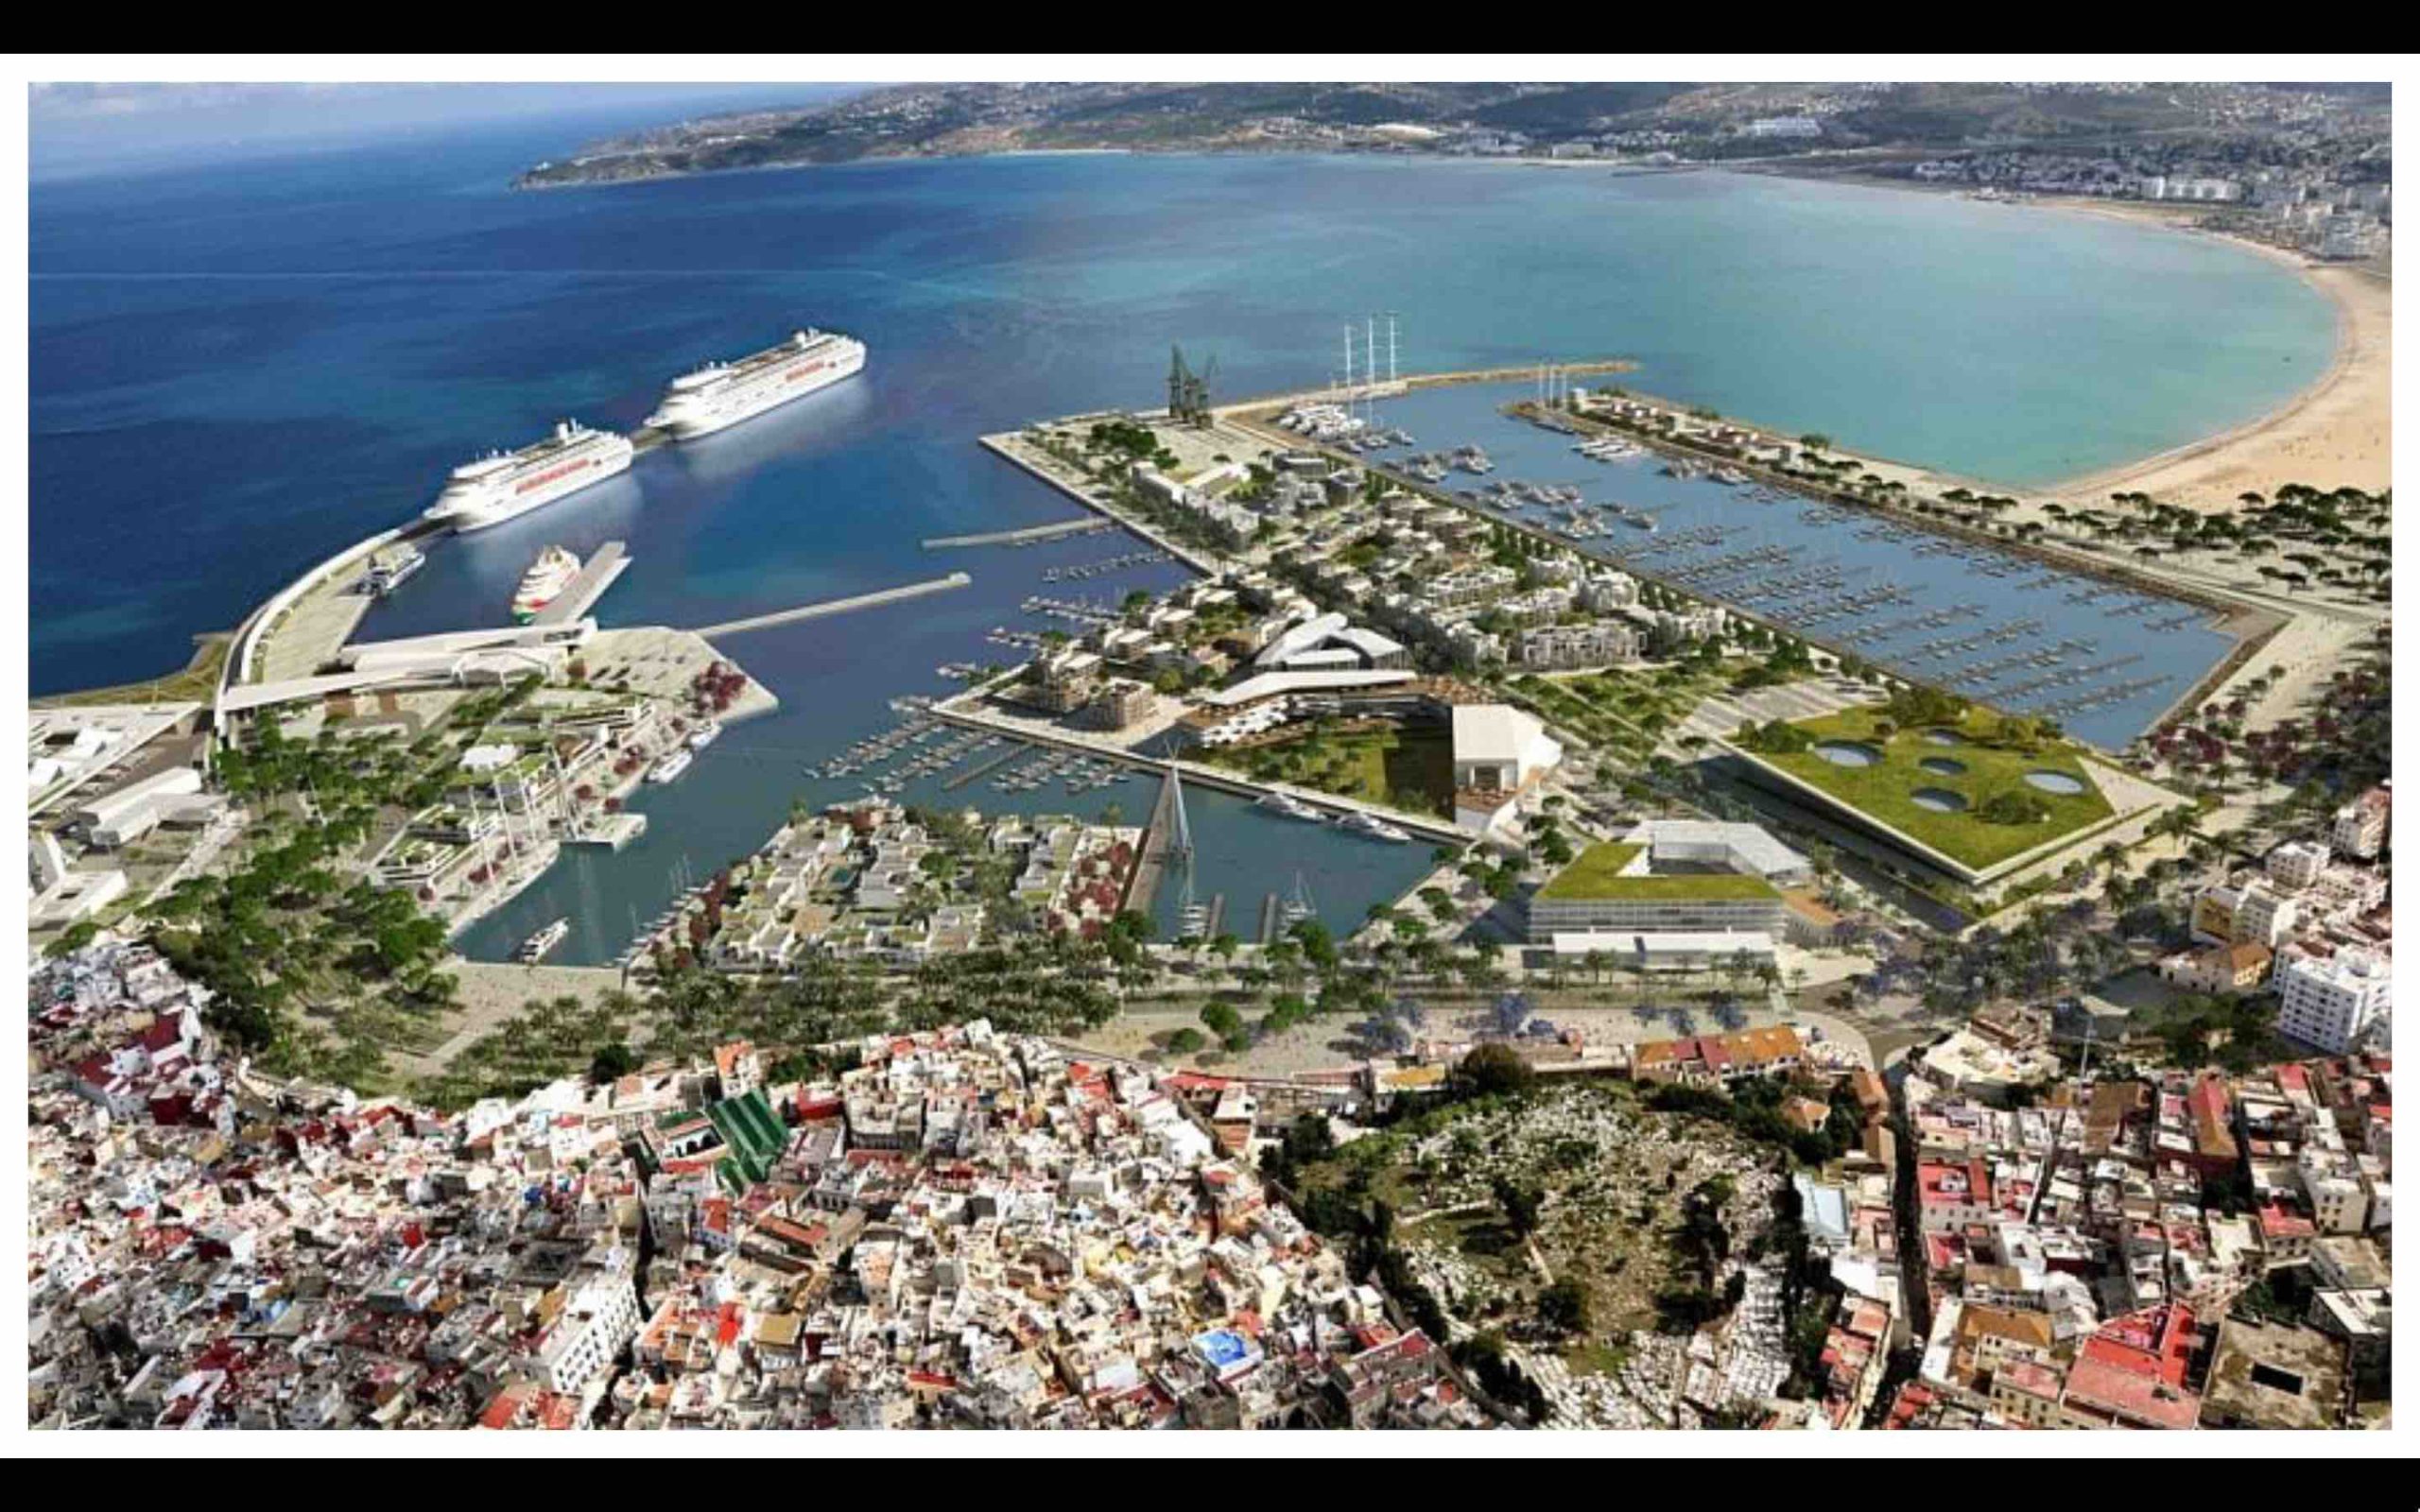 Maroc Port de Tanger Morocco Port of Tangier